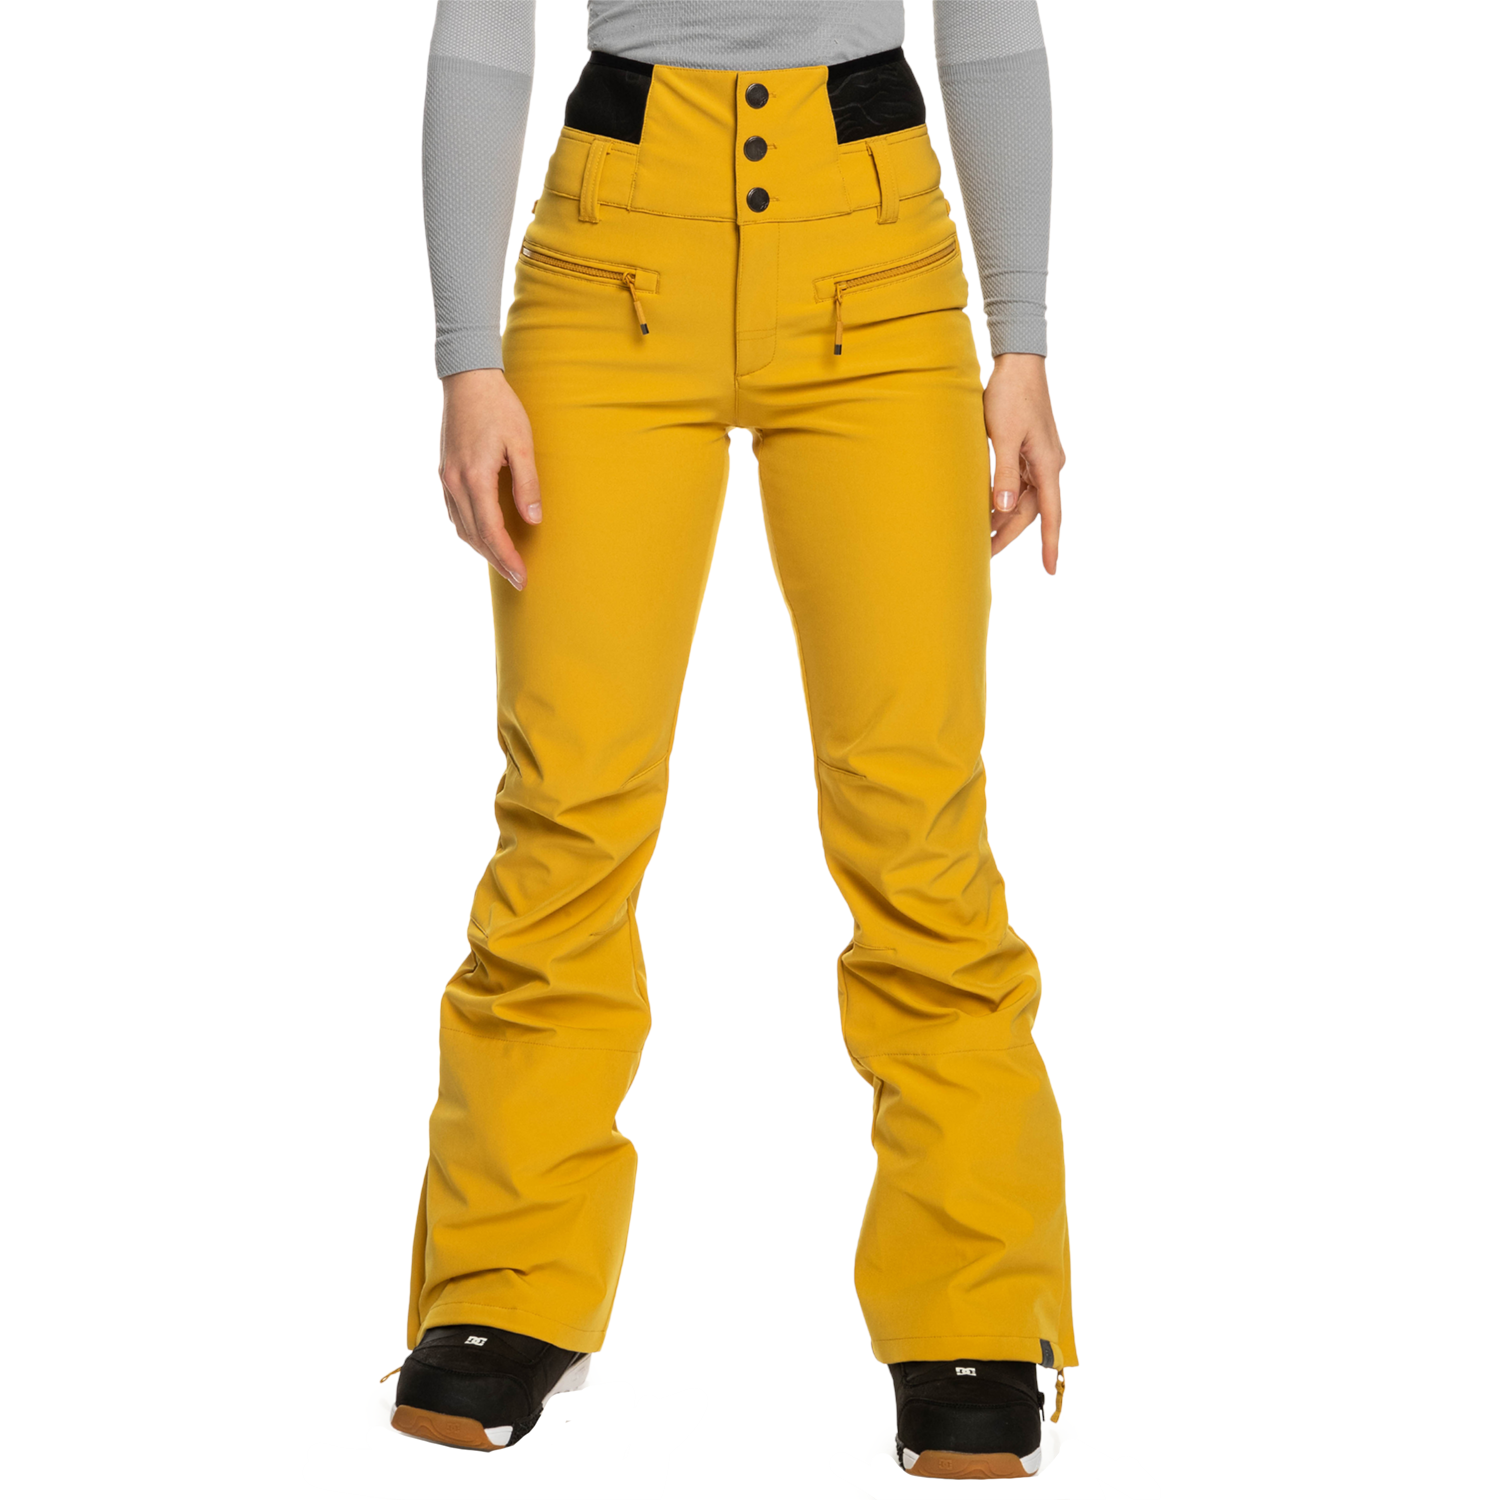 Roxy, Jackets & Coats, Roxy Rising High Technical Snow Pants